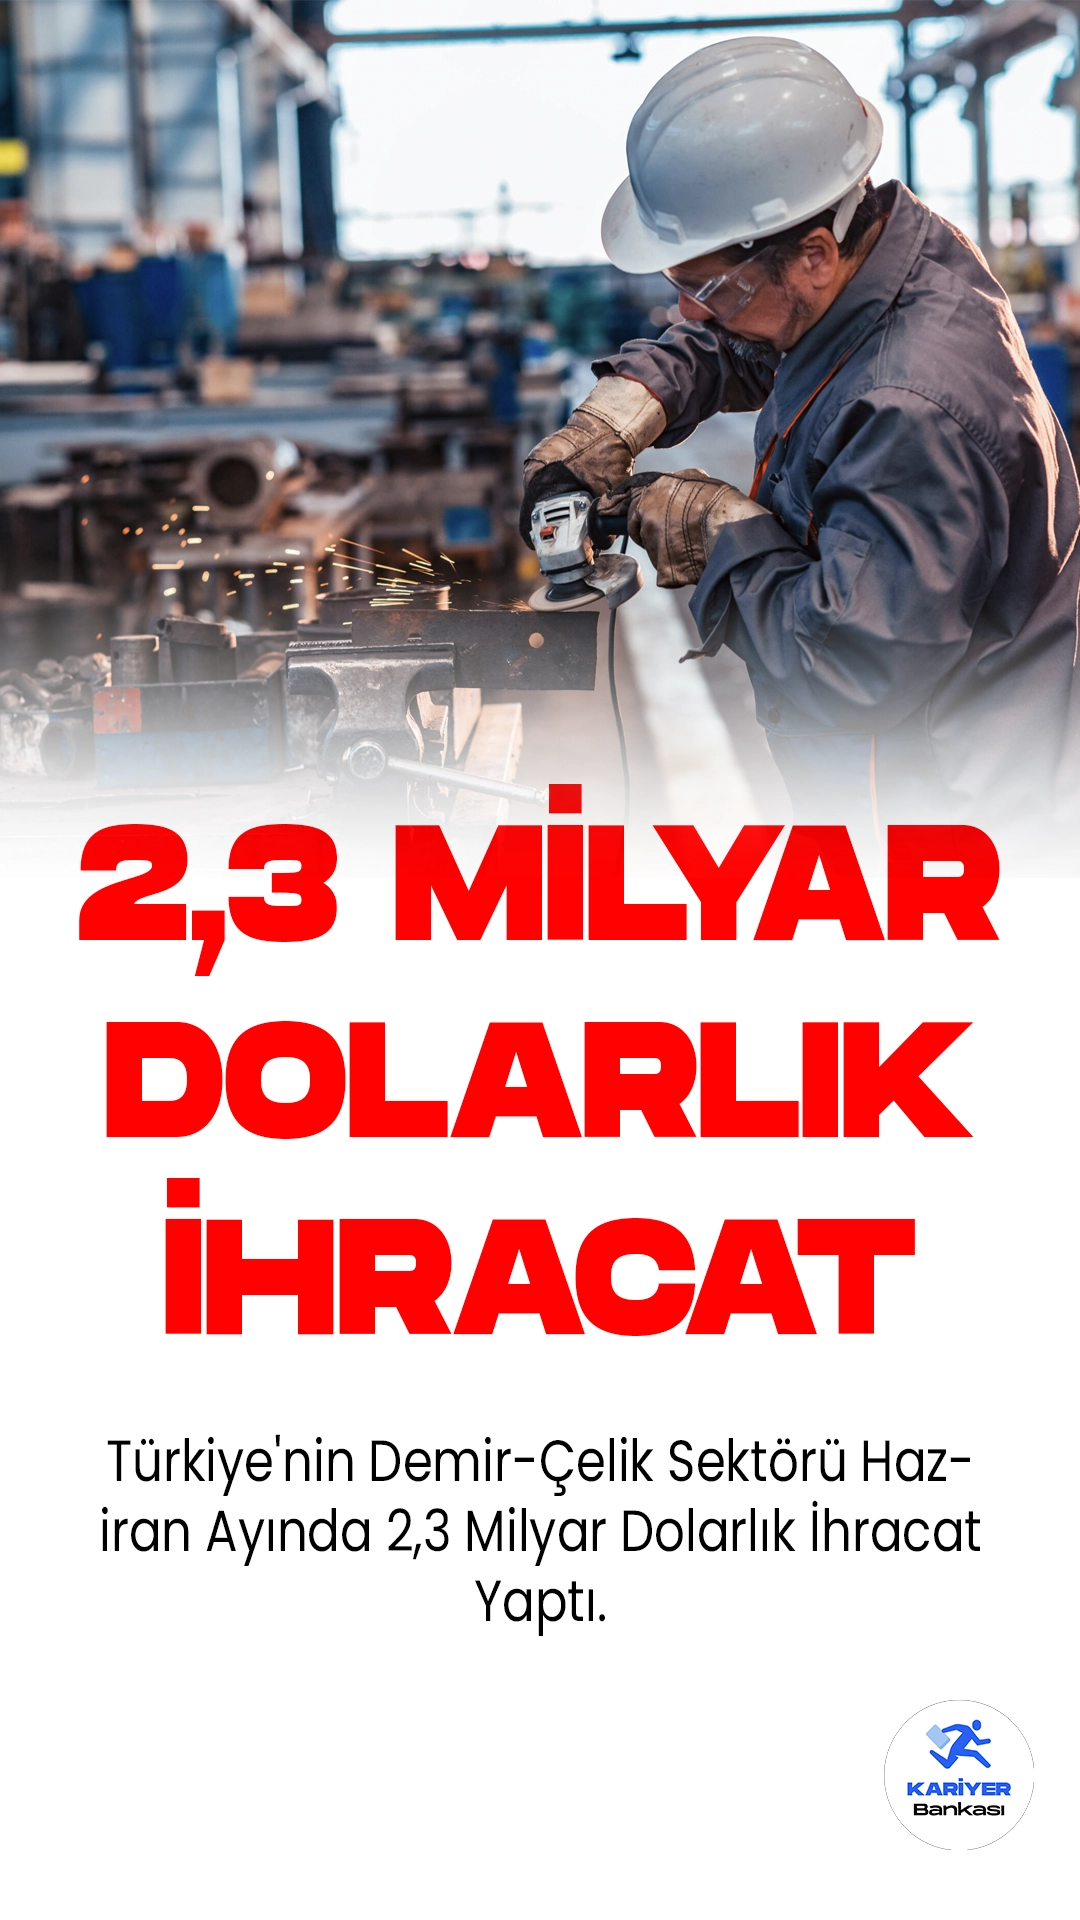 Türkiye'nin Demir-Çelik Sektörü Haziran Ayında 2,3 Milyar Dolarlık İhracat Yaptı.Demir-çelik sektörü, haziran ayında Türkiye ihracatına 2,3 milyar dolarlık destek verirken yılın ilk 6 ayında ise 13,6 milyar dolarlık ihracata imza atan sektörler, küresel talepteki durgunluğa rağmen Türkiye'nin toplam ihracatının da yüzde 12,7'sini üstlenerek ülke ekonomisine önemli katkı sağladı.